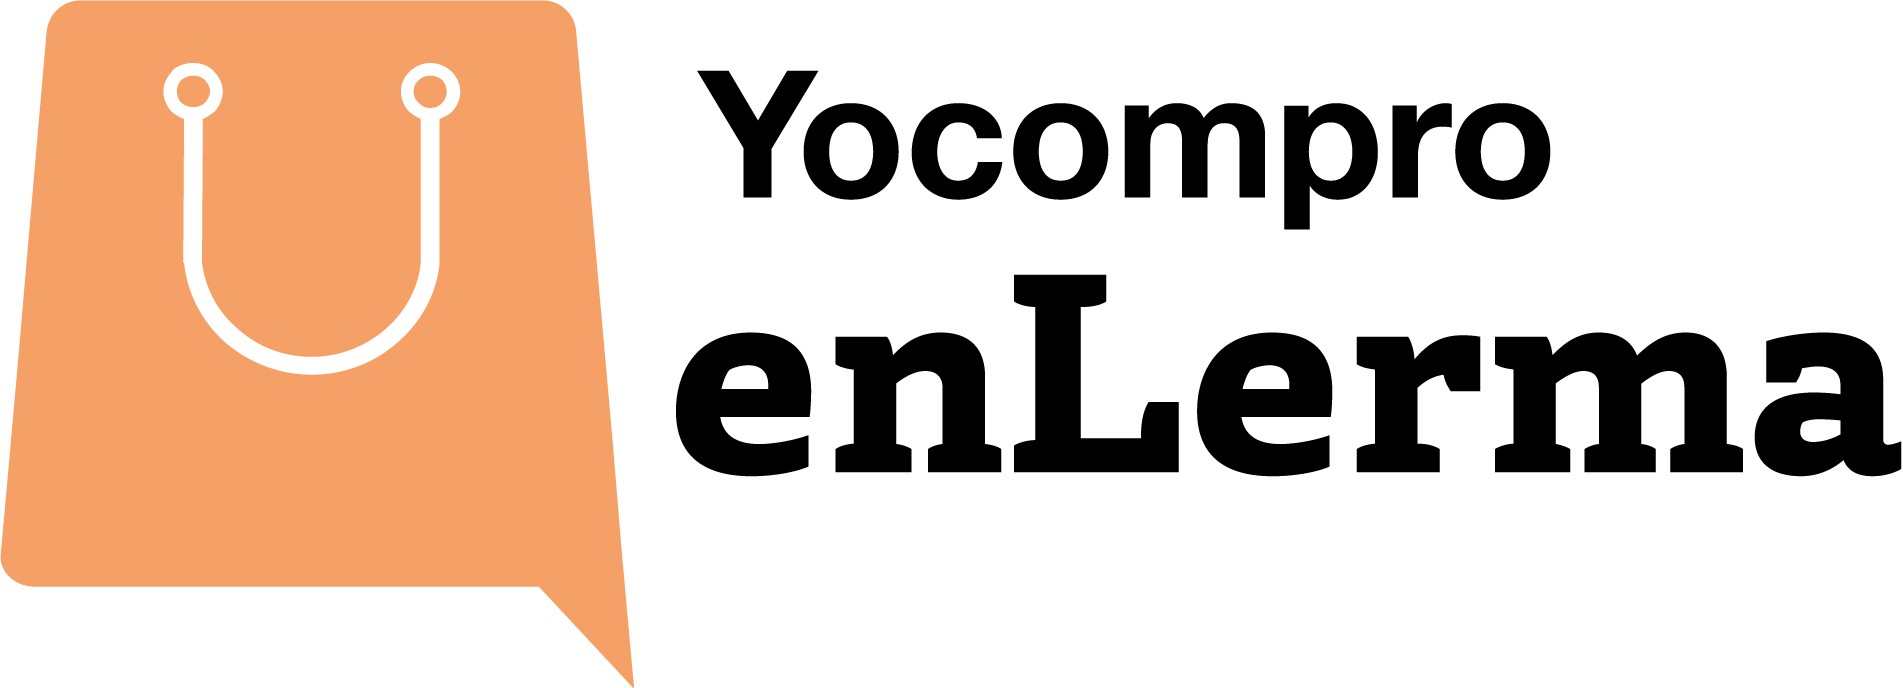 yocomproenlerma.com